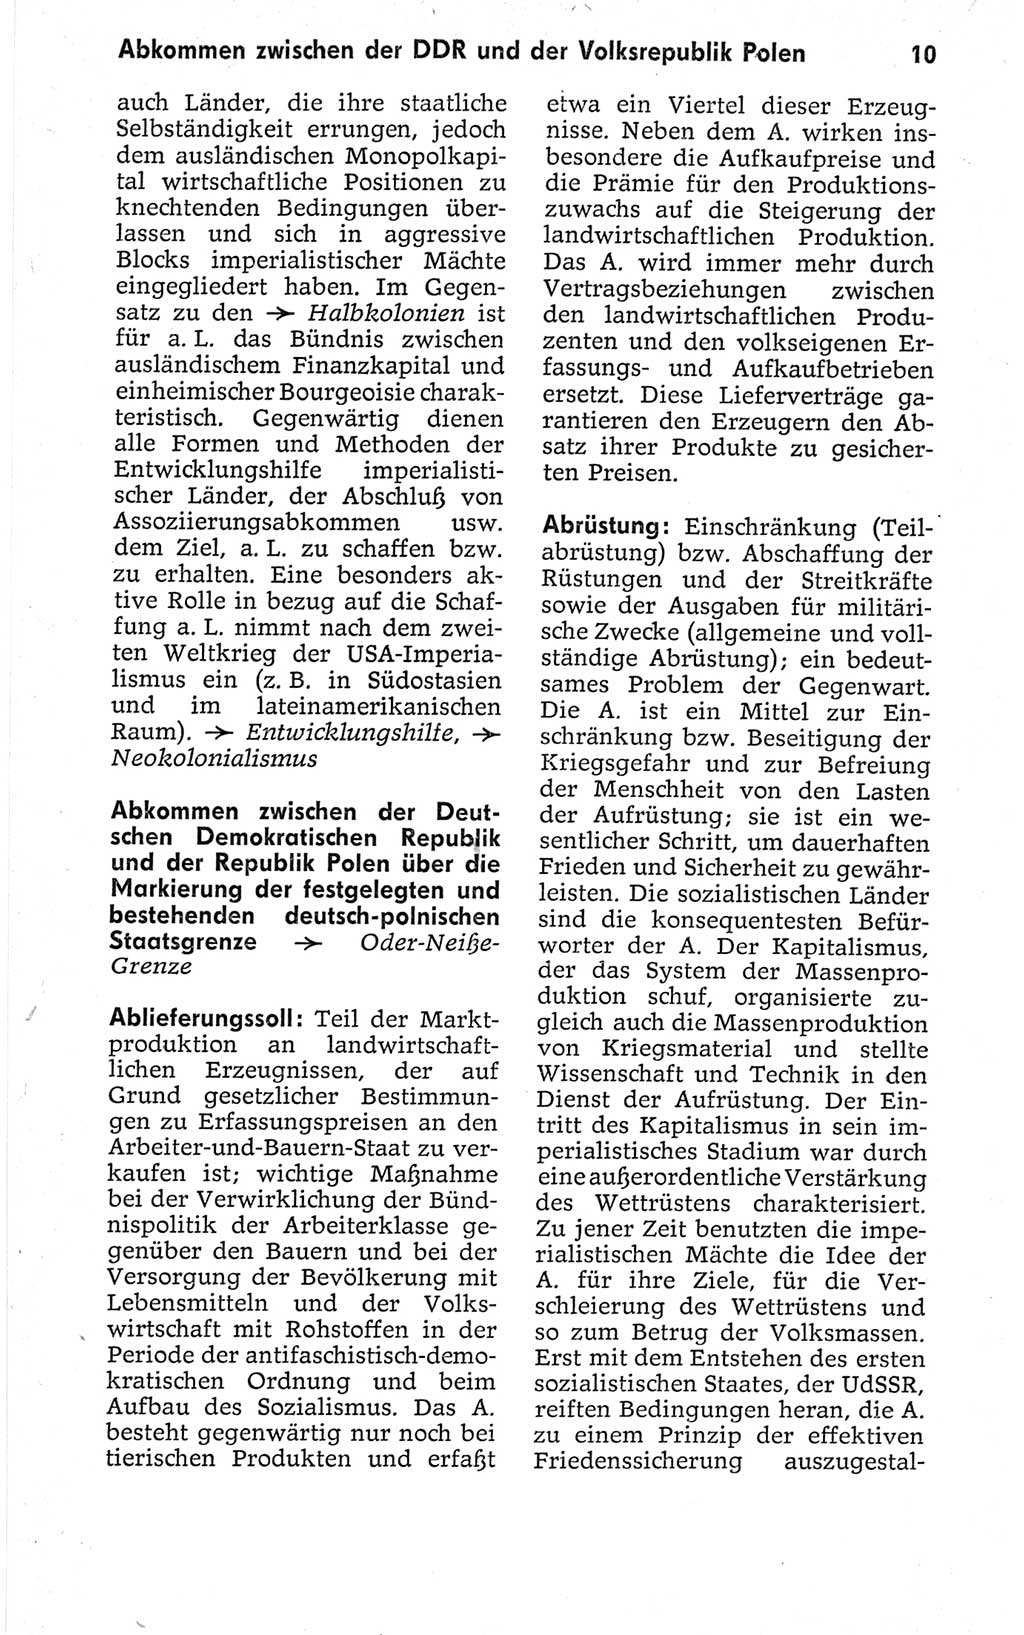 Kleines politisches Wörterbuch [Deutsche Demokratische Republik (DDR)] 1967, Seite 10 (Kl. pol. Wb. DDR 1967, S. 10)